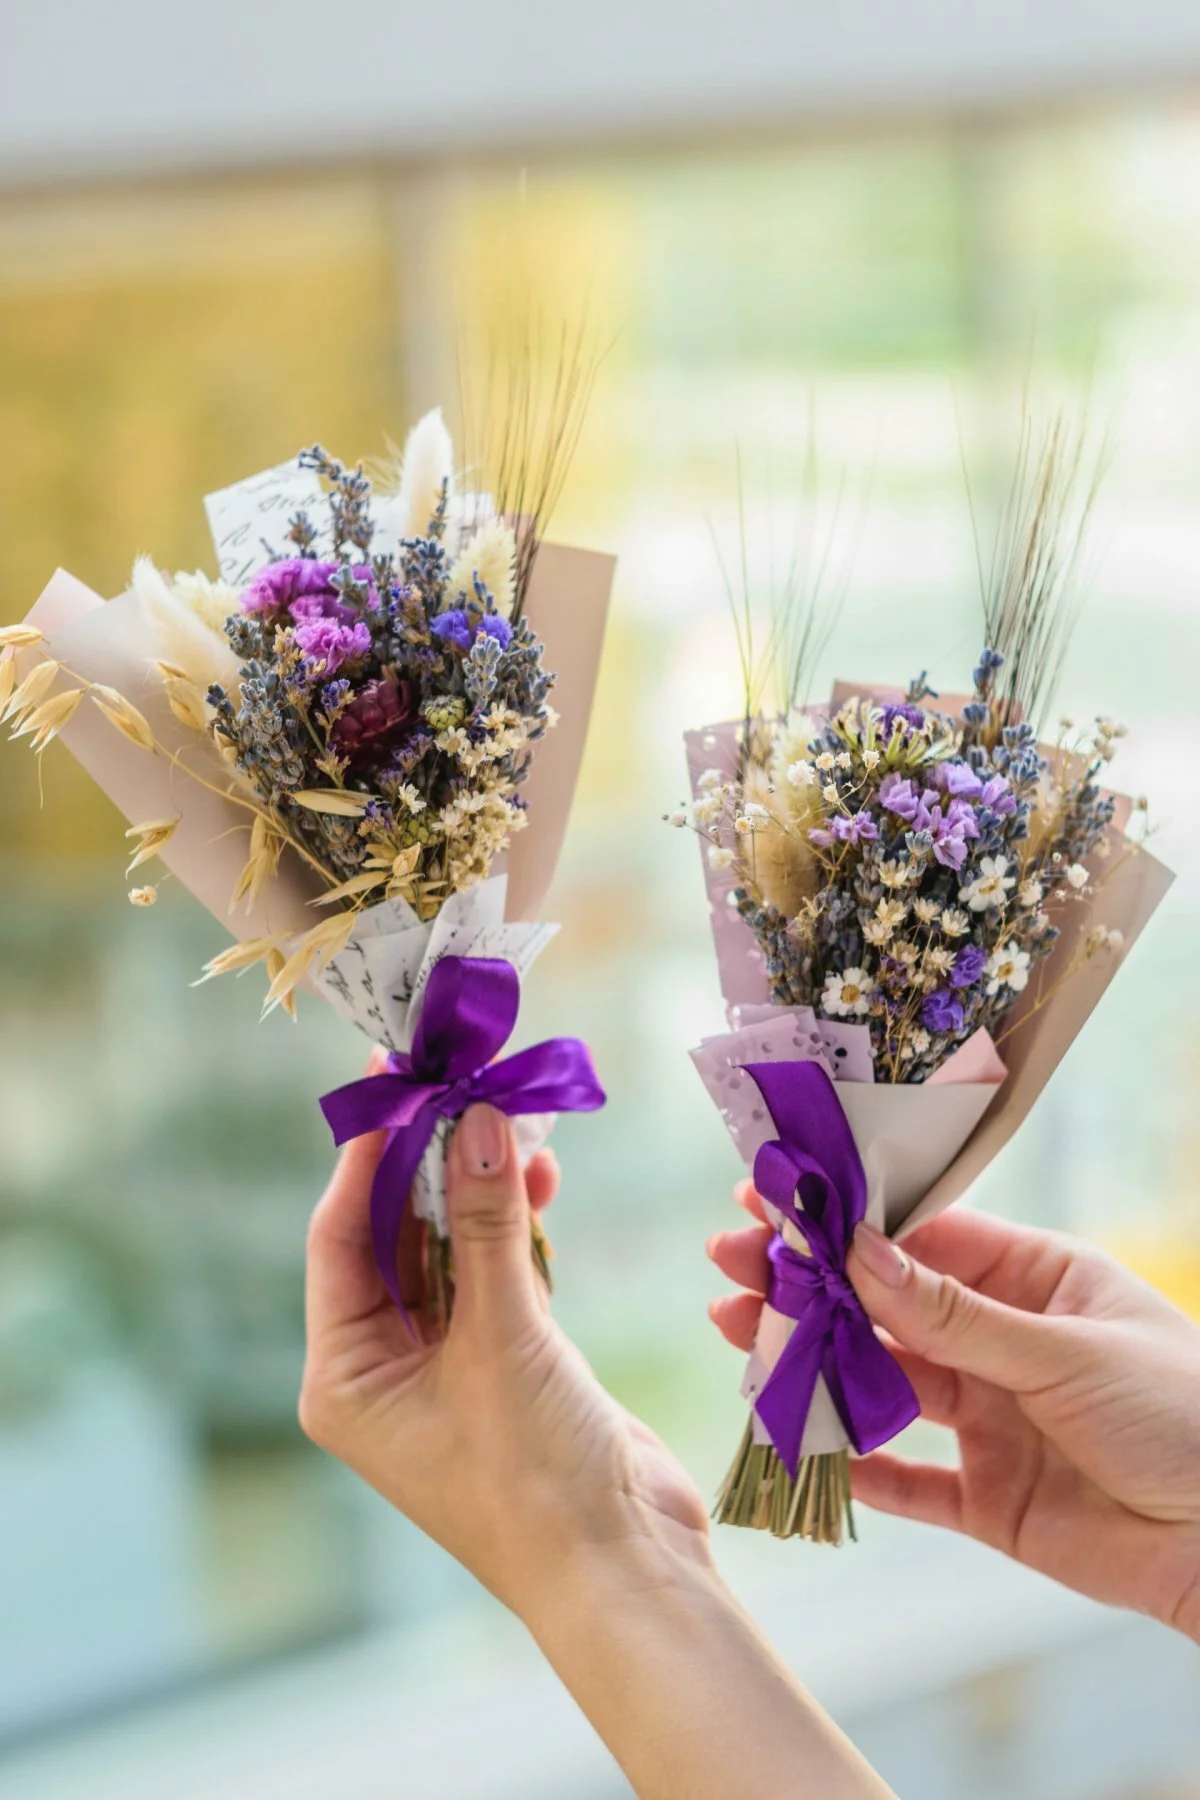 Что подарить вместо букета цветов на любой праздник? — СУПЕР ИДЕЯ